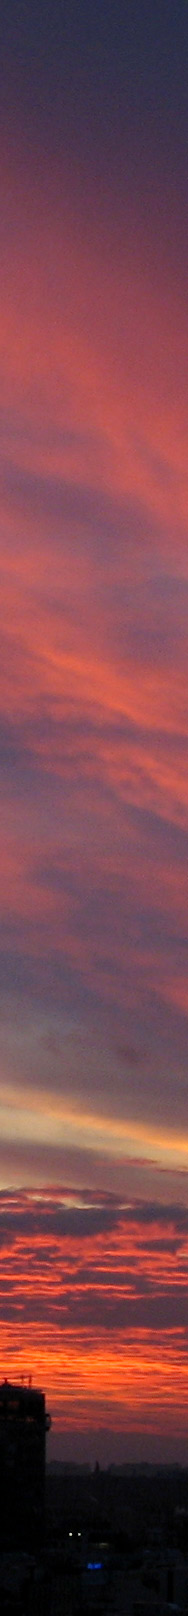 Sonnenuntergang, Sunset, Berlin, 12.12.05, 16:07